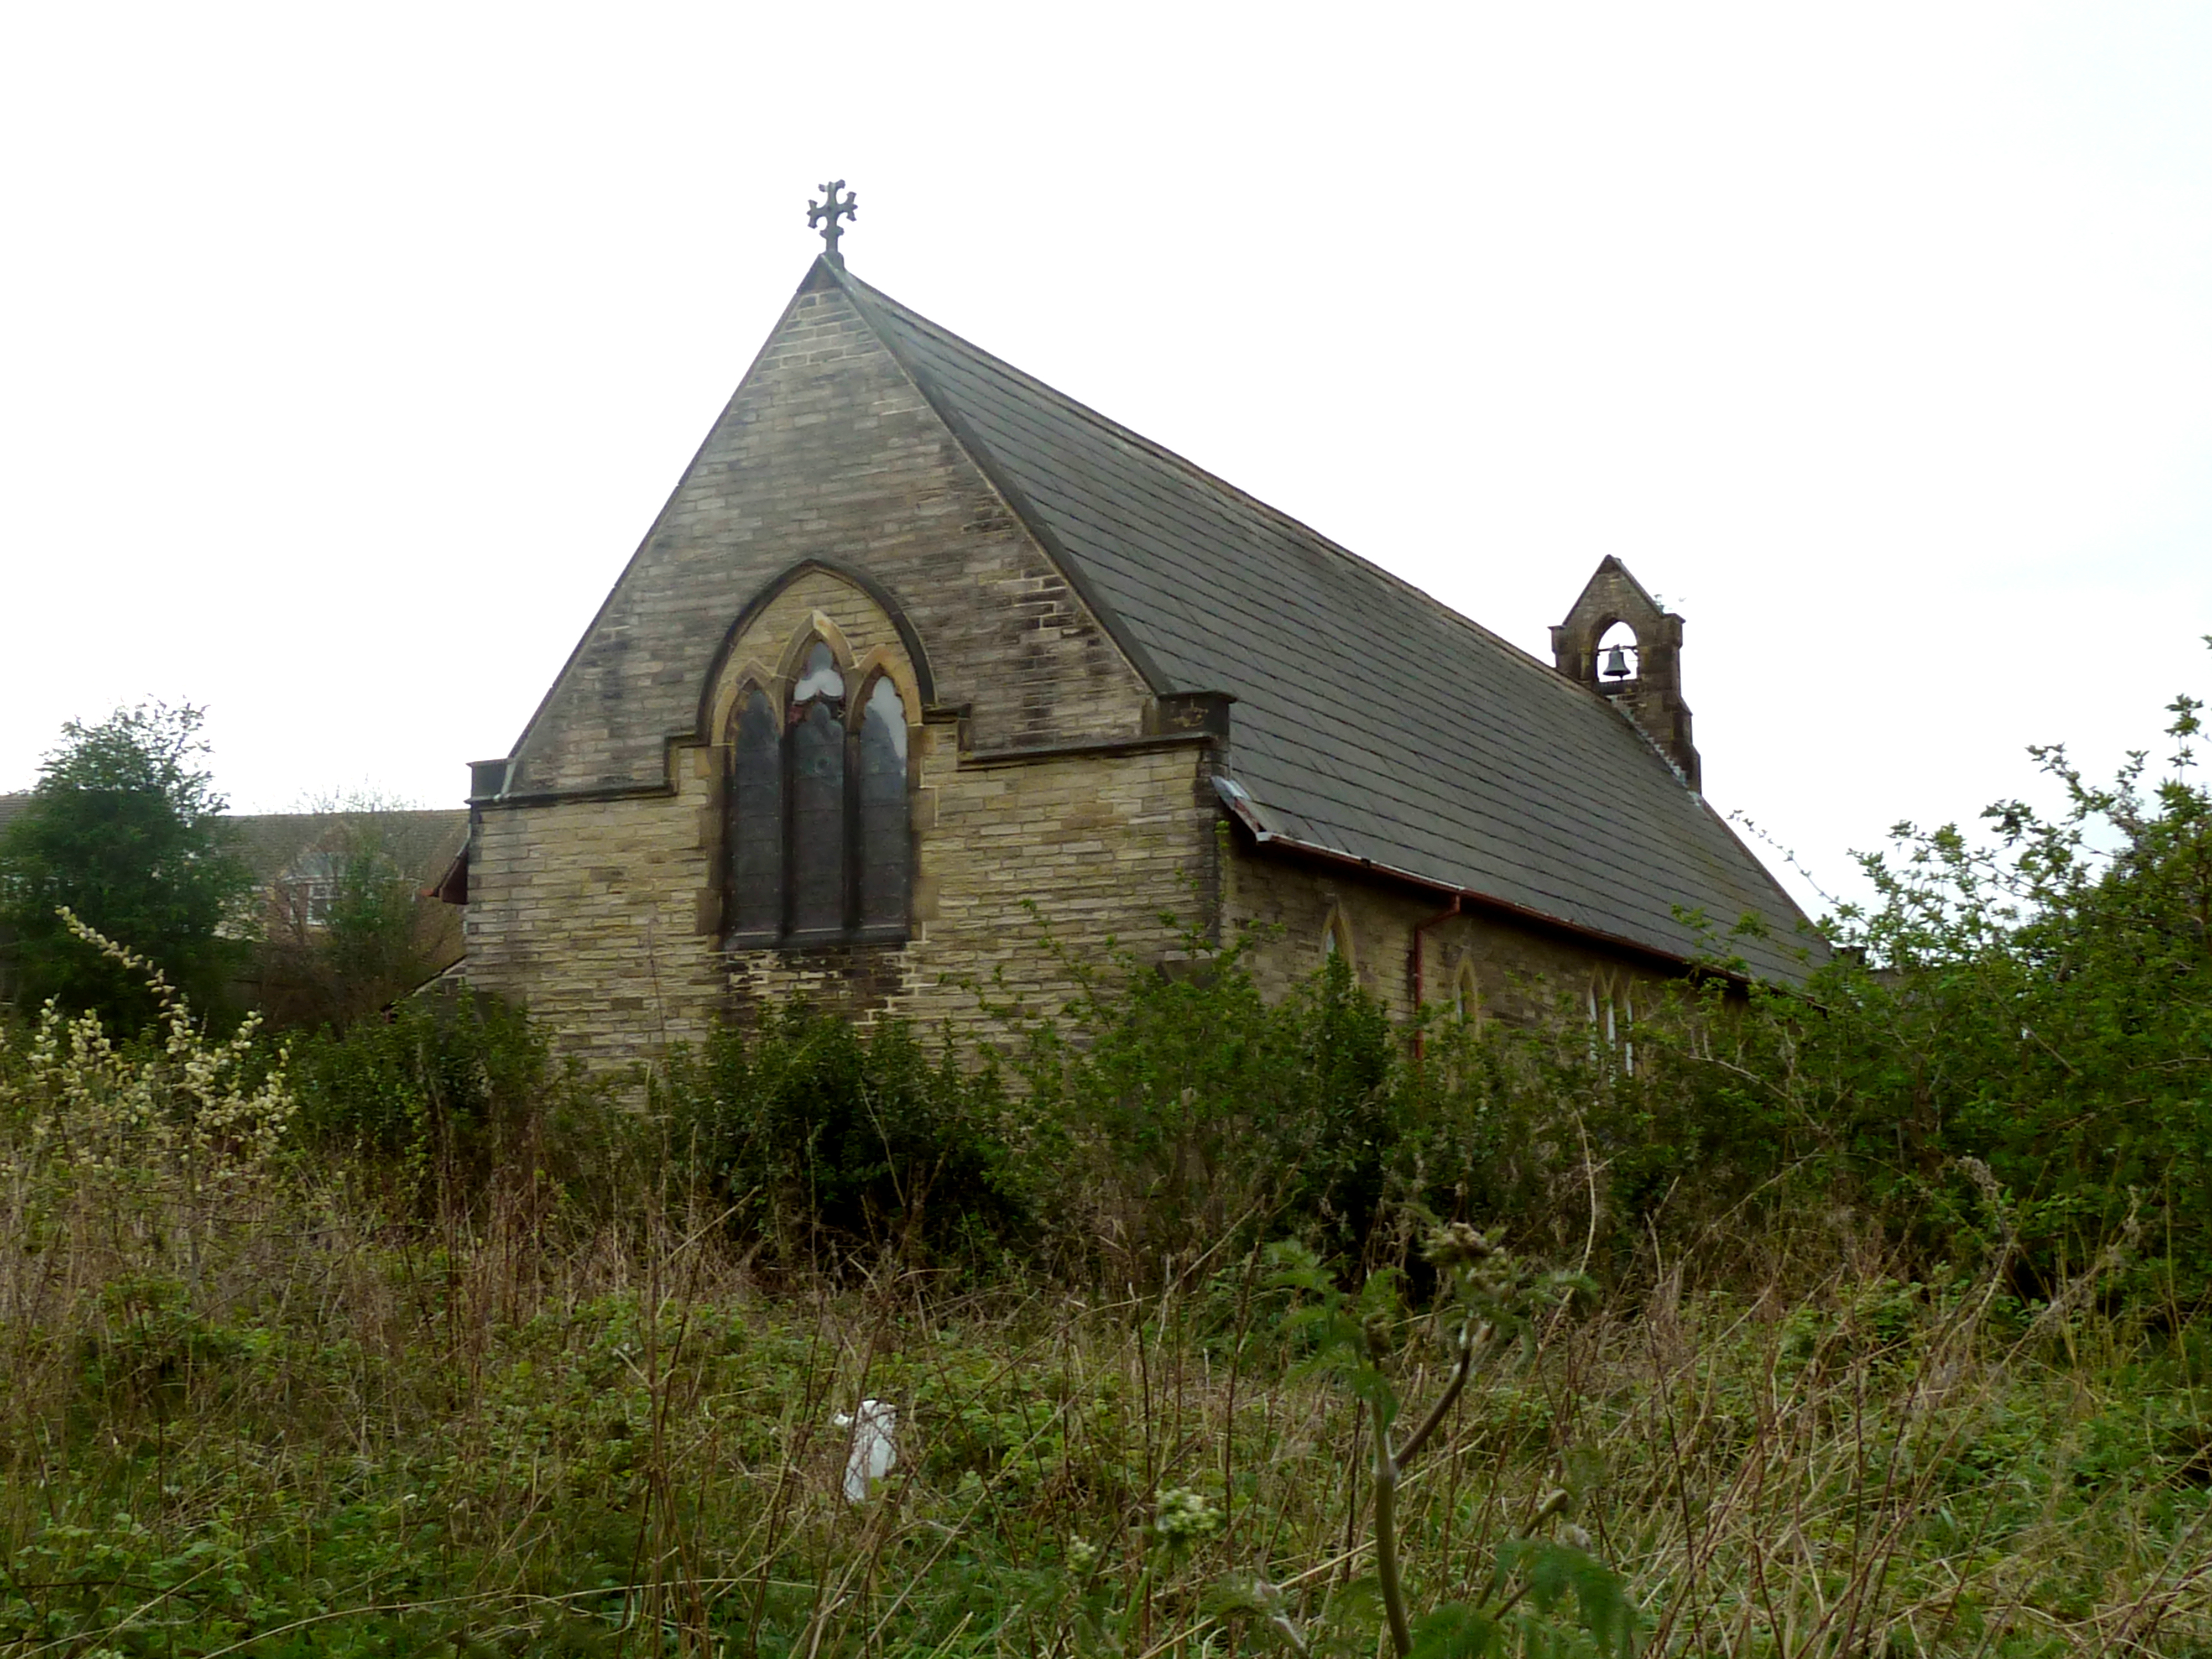 File:St John Calder Grove plans 2f.jpg - Wikipedia